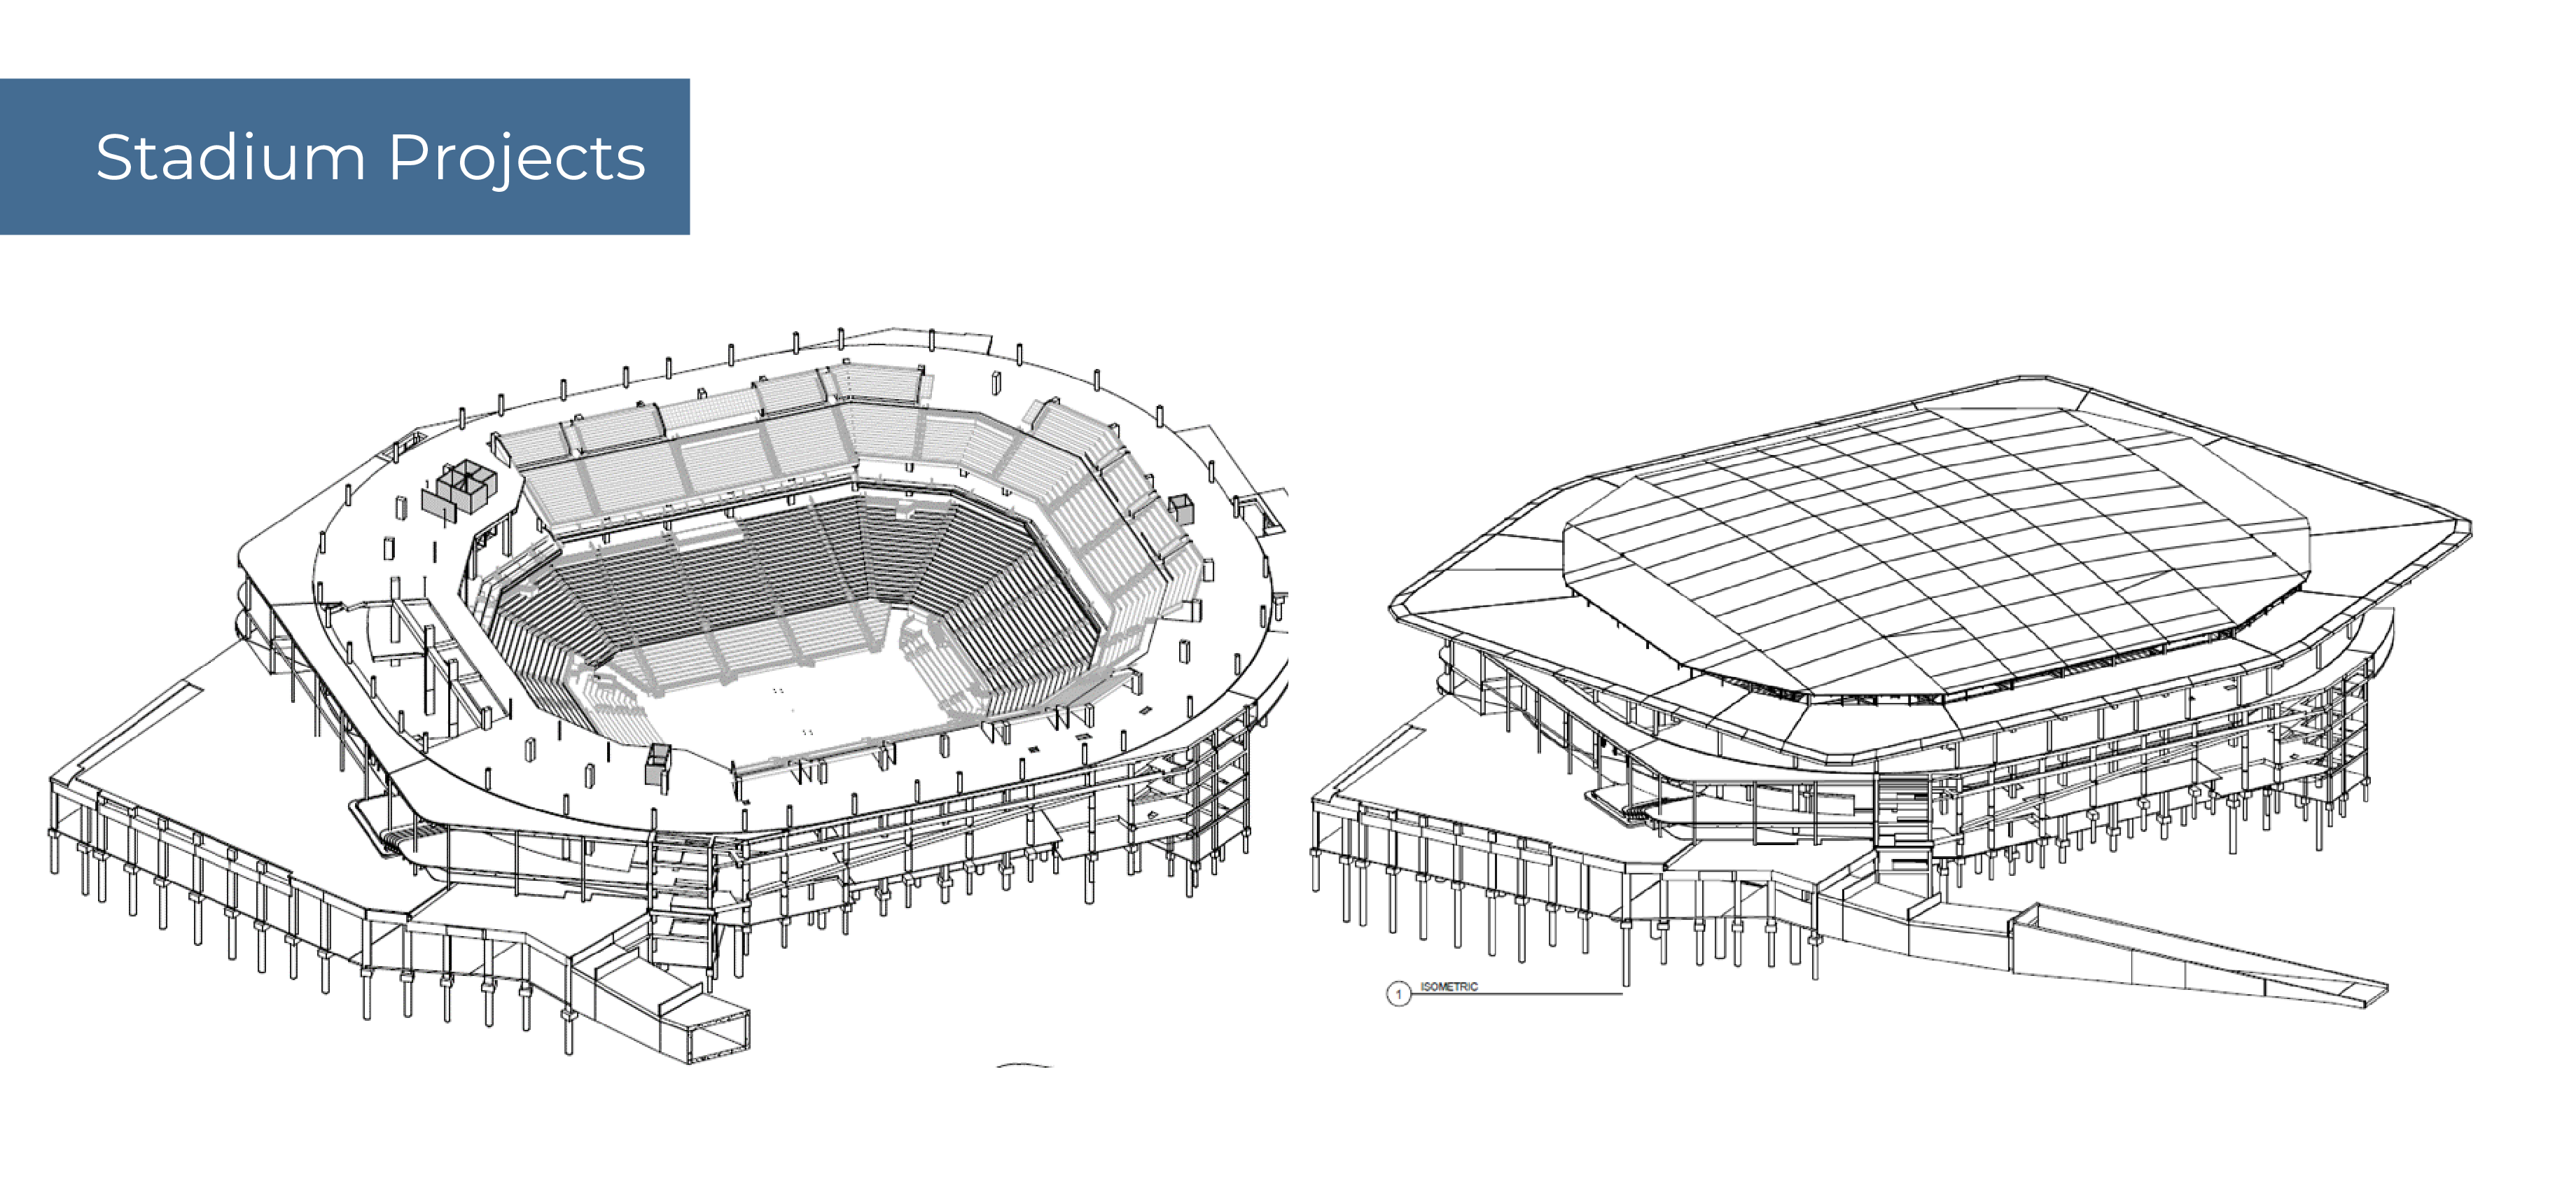 Stadium Footer Image